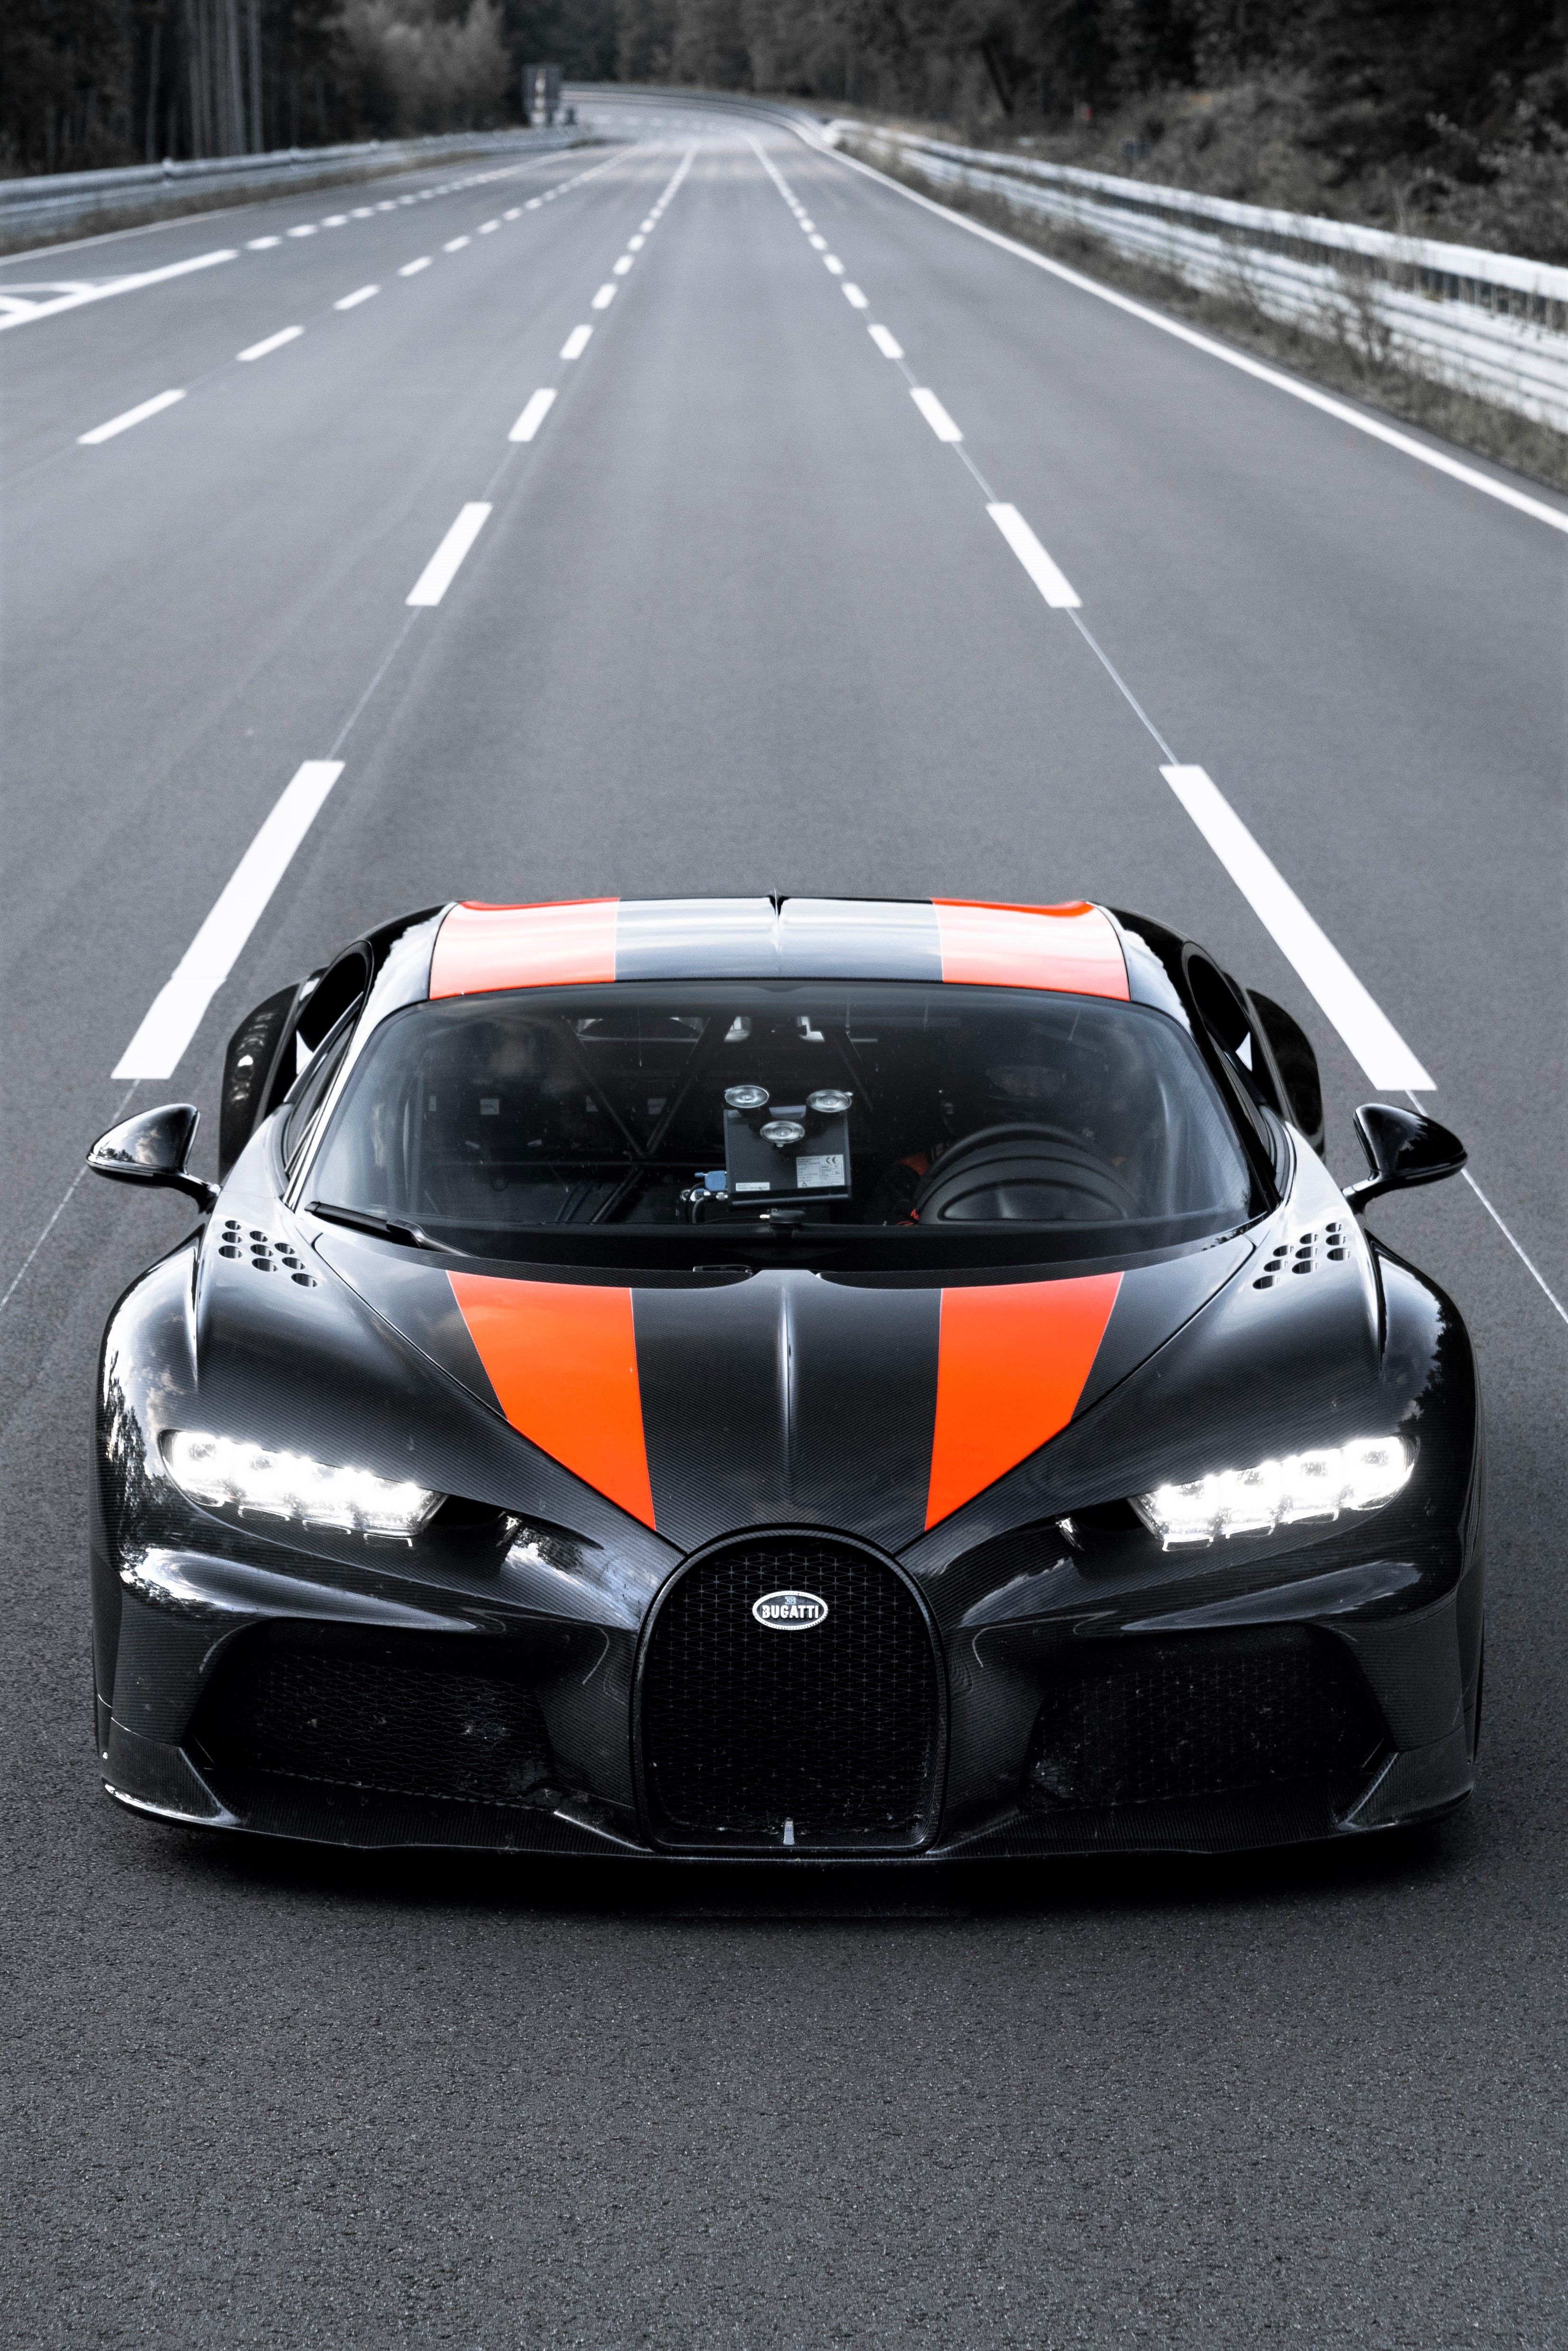 Raging 2021 Bugatti Chiron Super Sport. Bugatti chiron, Bugatti cars, Bugatti